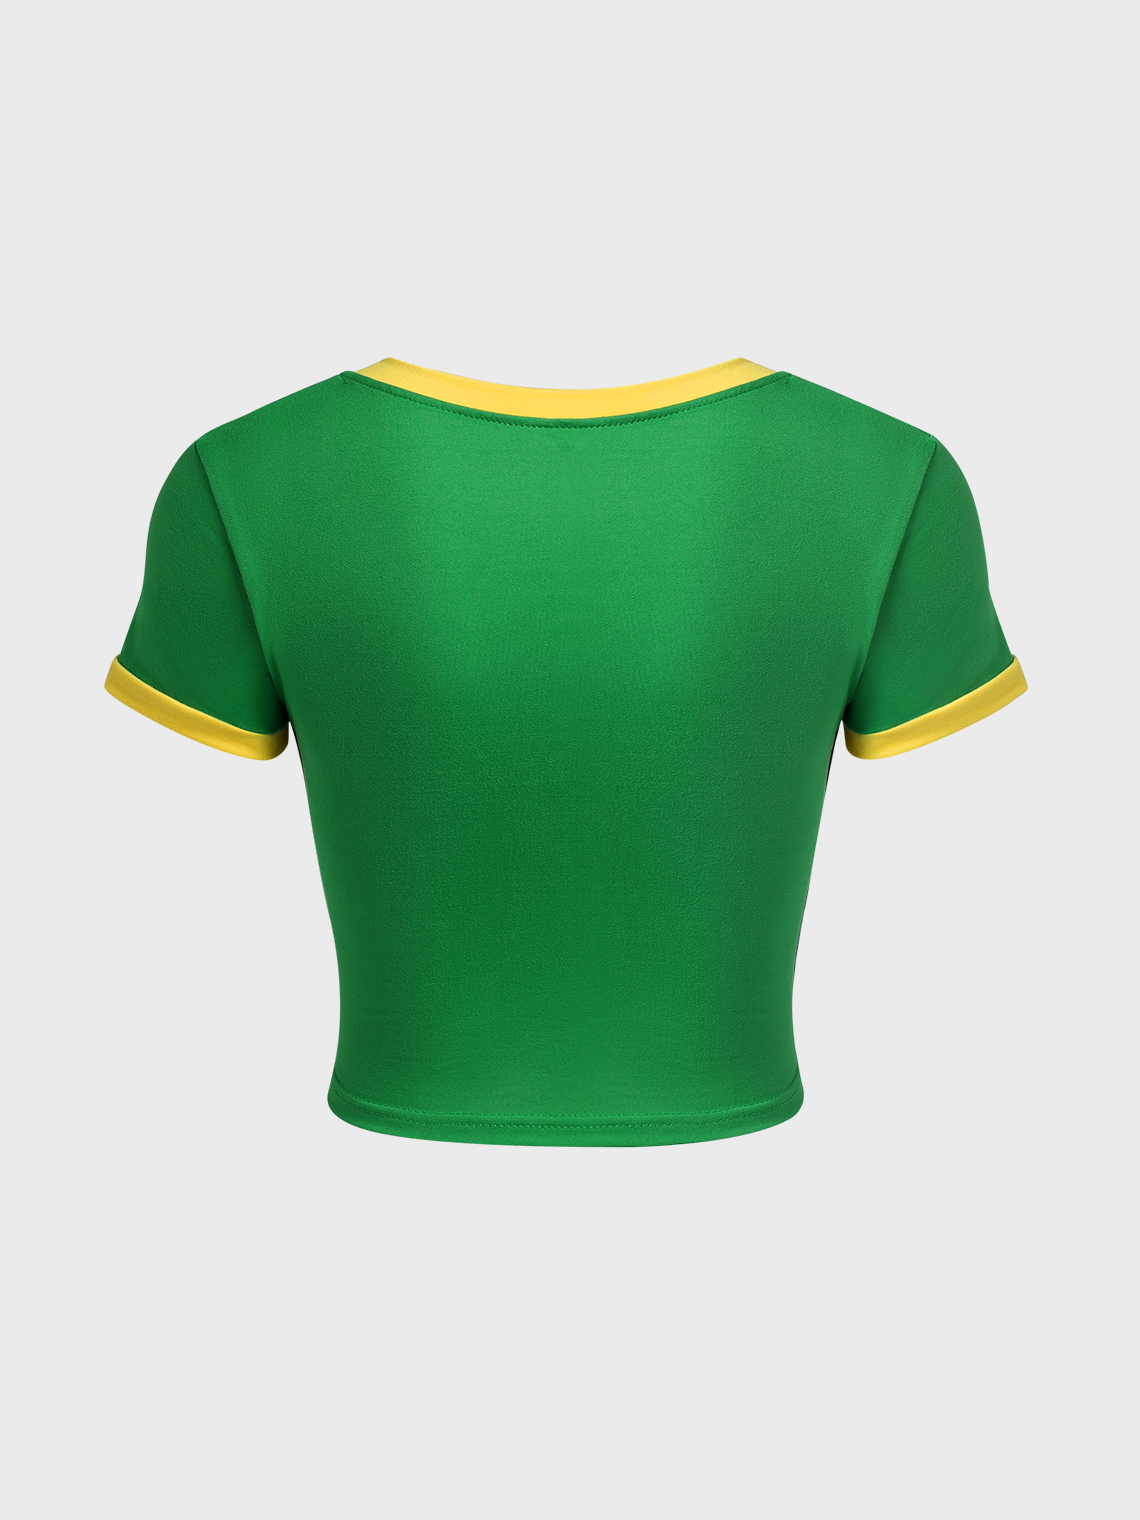 Jamaica Color block Basic Top T-Shirt